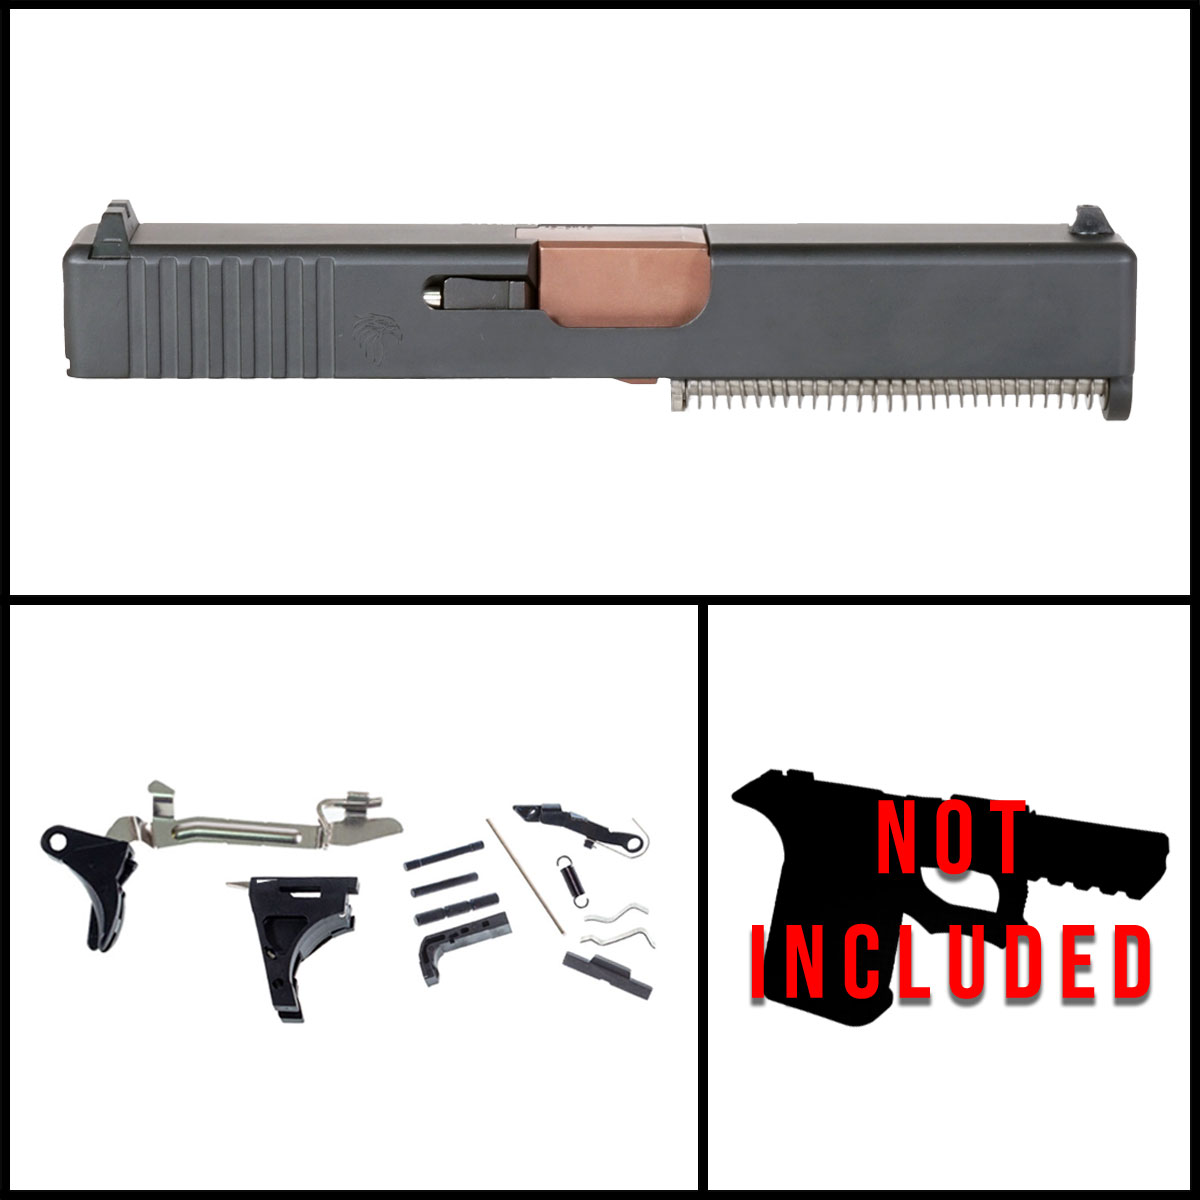 DTT 'Diffuser' 9mm Full Gun Kit - Glock 19 Gen 1-3 Compatible